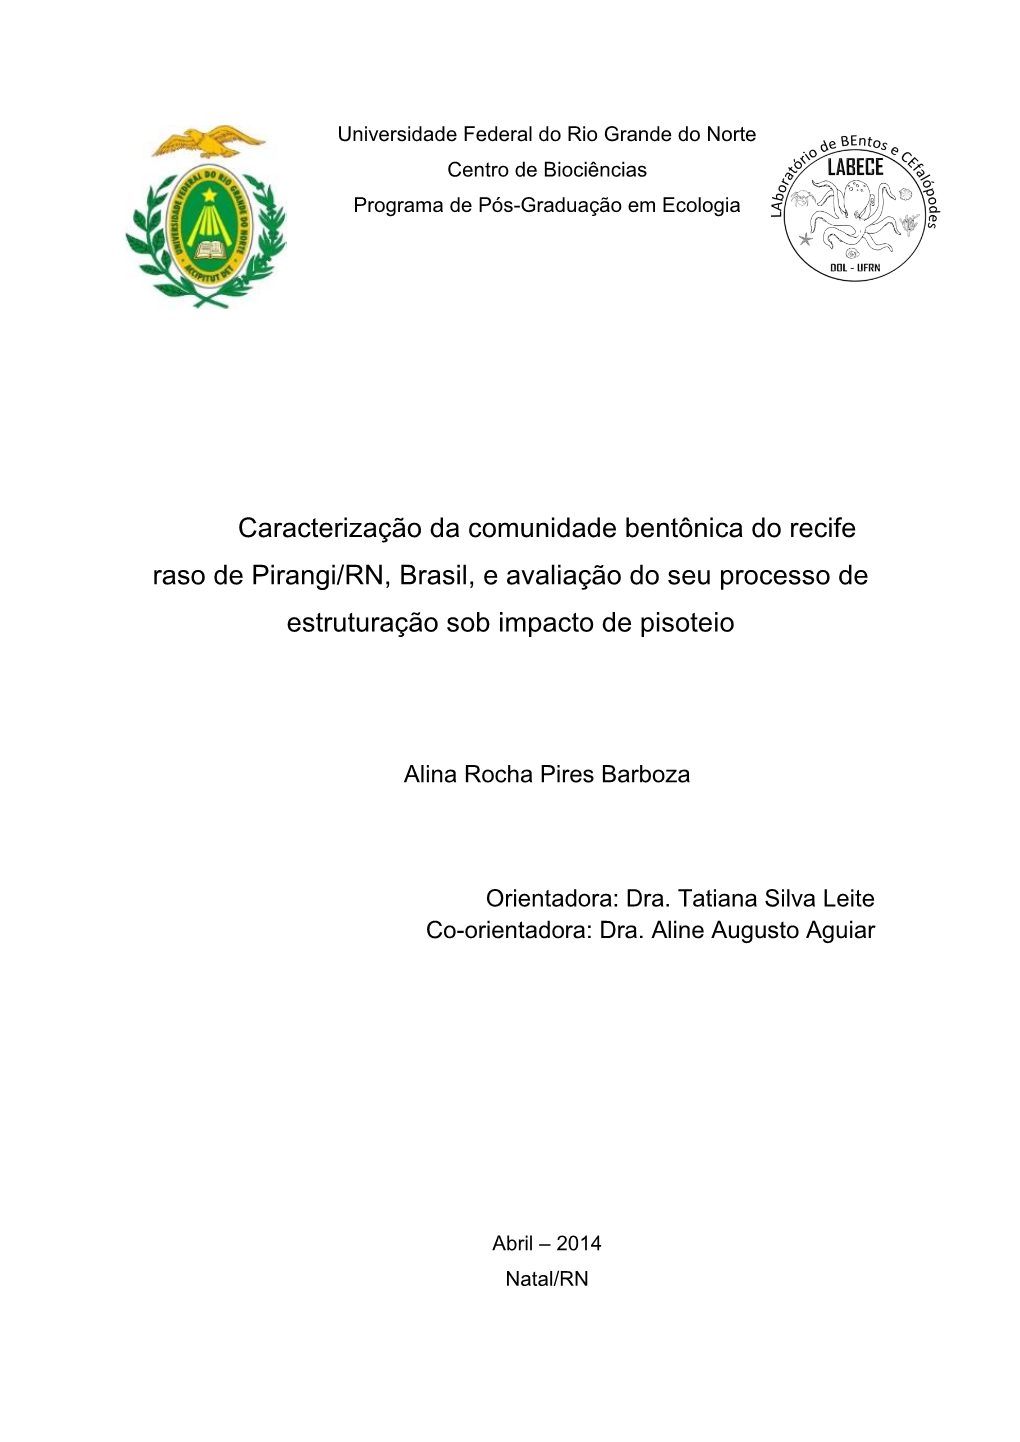 Caracterização Da Comunidade Bentônica Do Recife Raso De Pirangi/RN, Brasil, E Avaliação Do Seu Processo De Estruturação Sob Impacto De Pisoteio